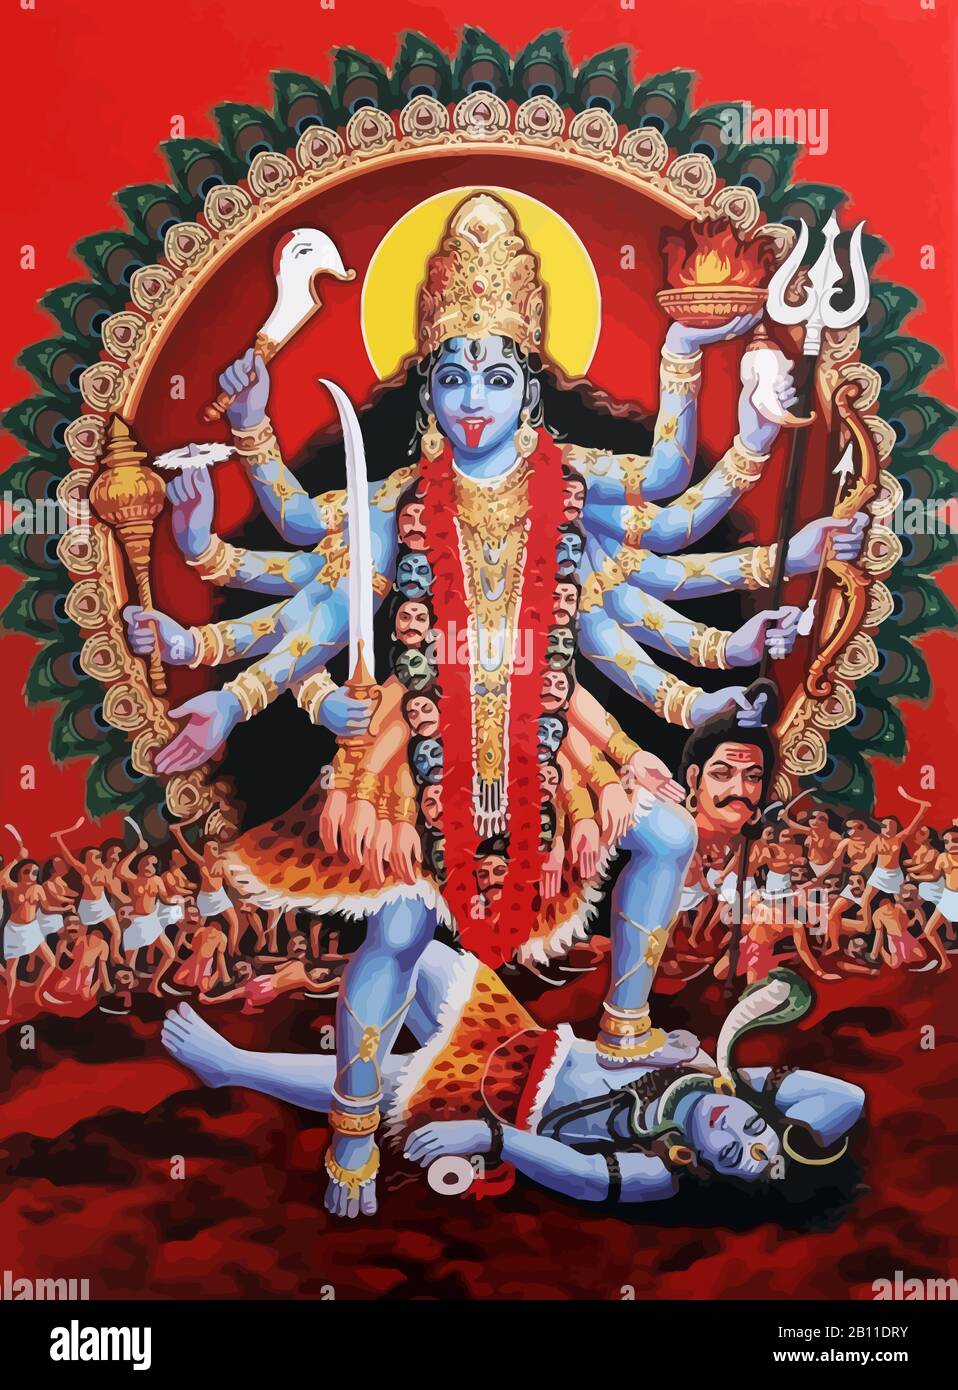 Kali-Totengöttin indische hinduistische dunkle Sirenenillustration  Stockfotografie - Alamy